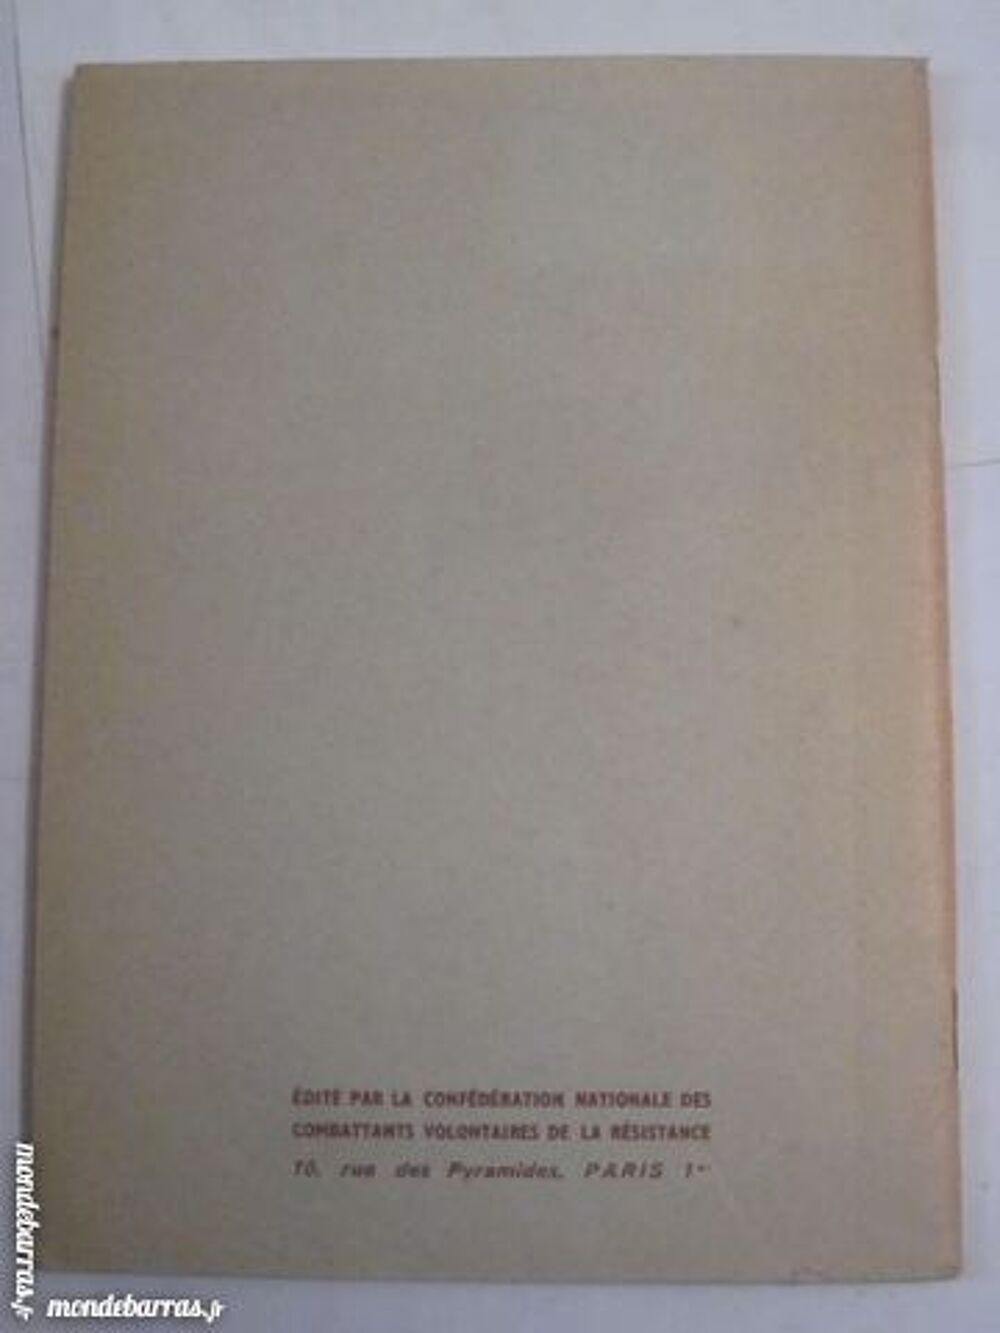 LA RESISTANCE 1940 - 1945 N&deg;100 Livres et BD